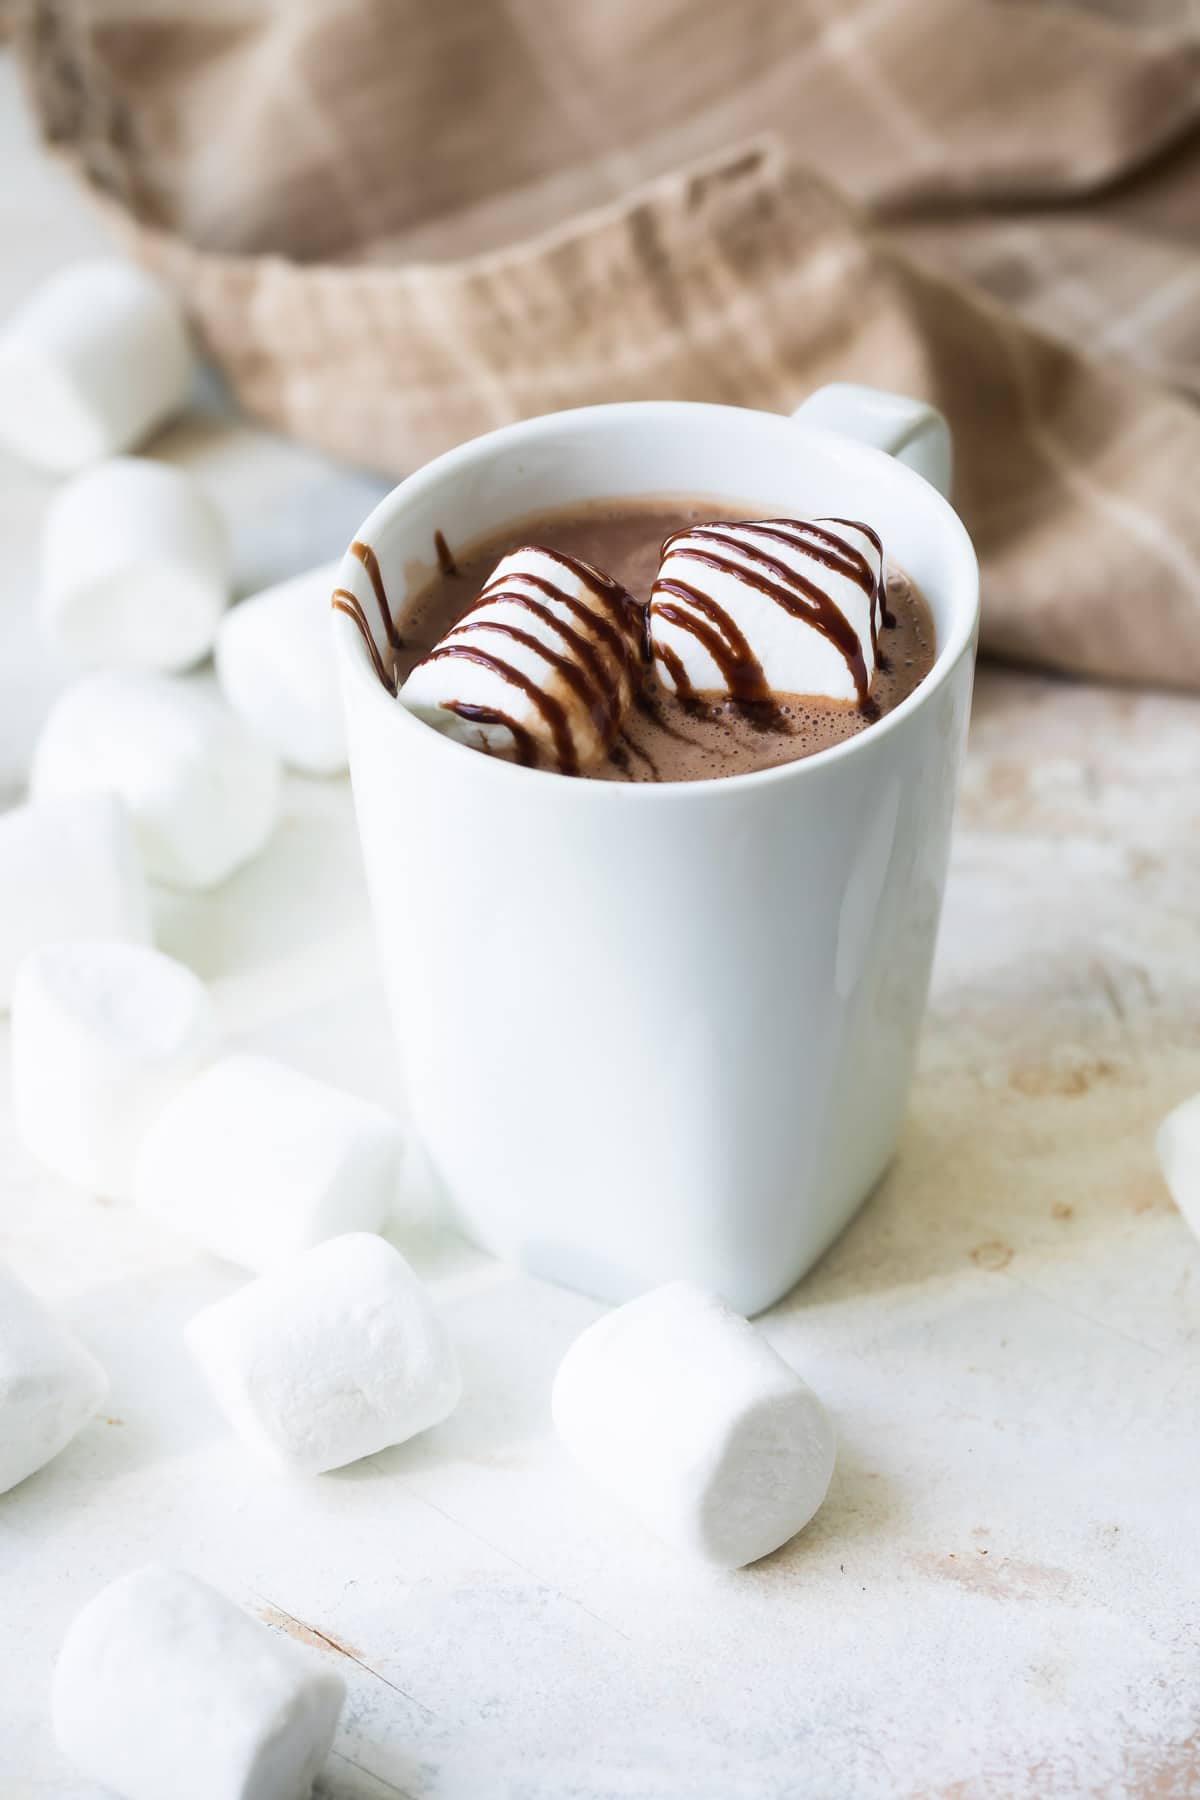 Hot chocolate in a latte mug.